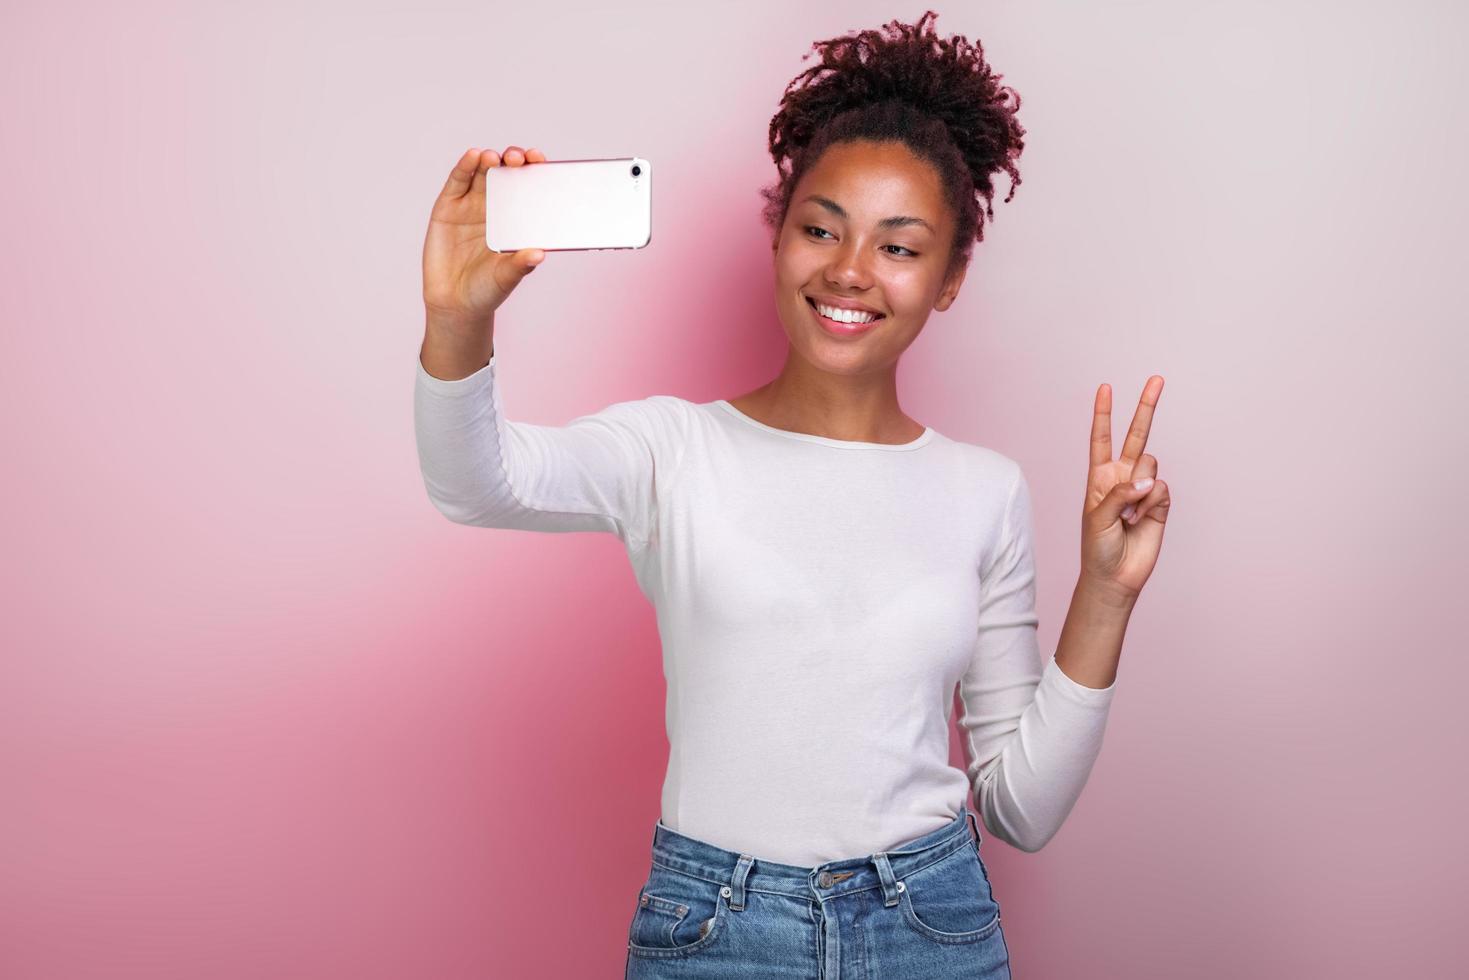 Jeune fille tenant un téléphone portable prend une photo avec un geste de victoire selfies - image